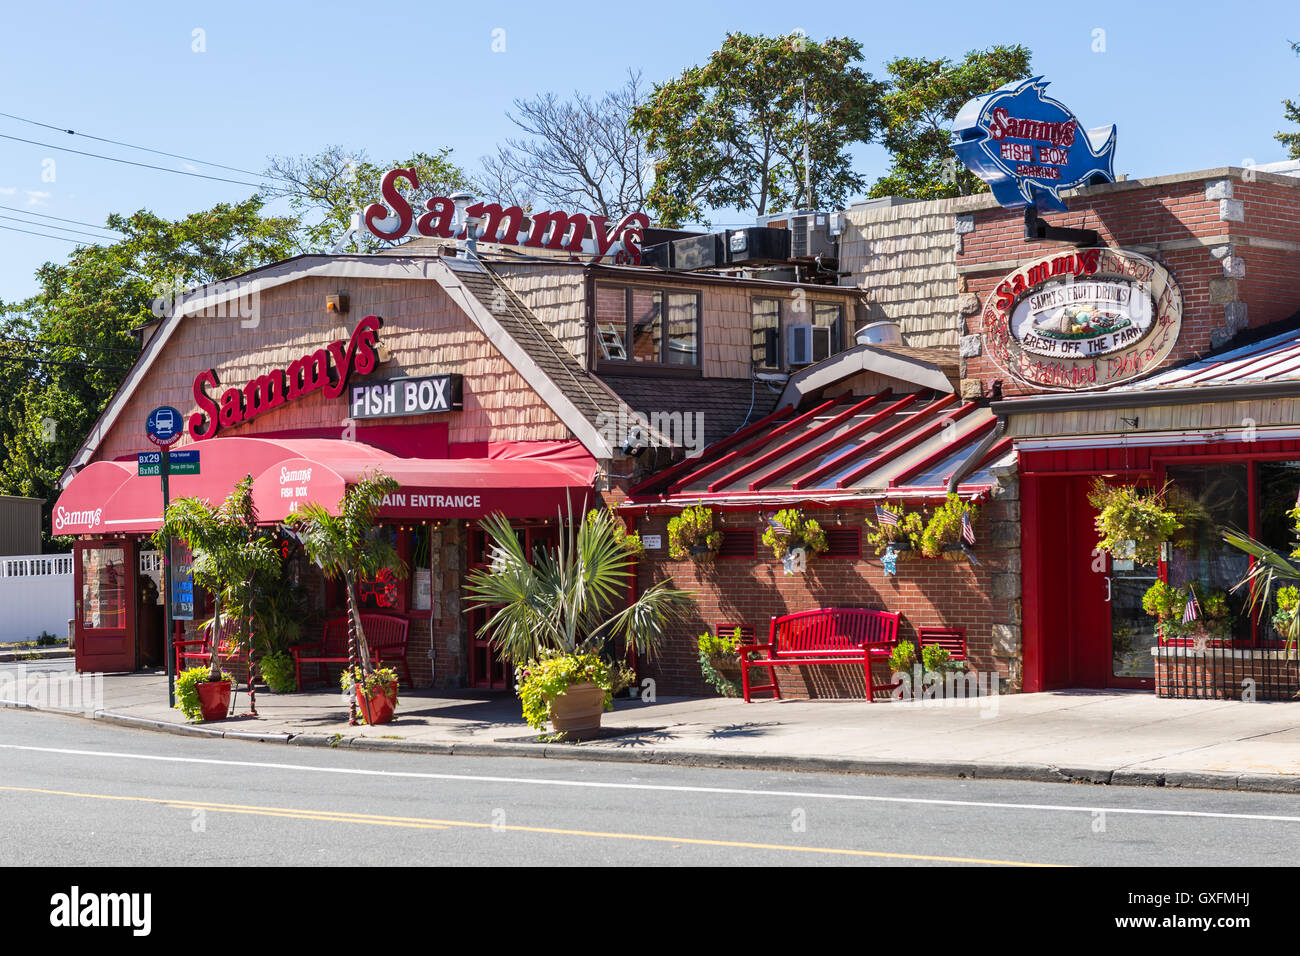 La entrada principal a Sammy's Fish Box, un restaurante de marisco en City Island en el Bronx, Nueva York. Foto de stock